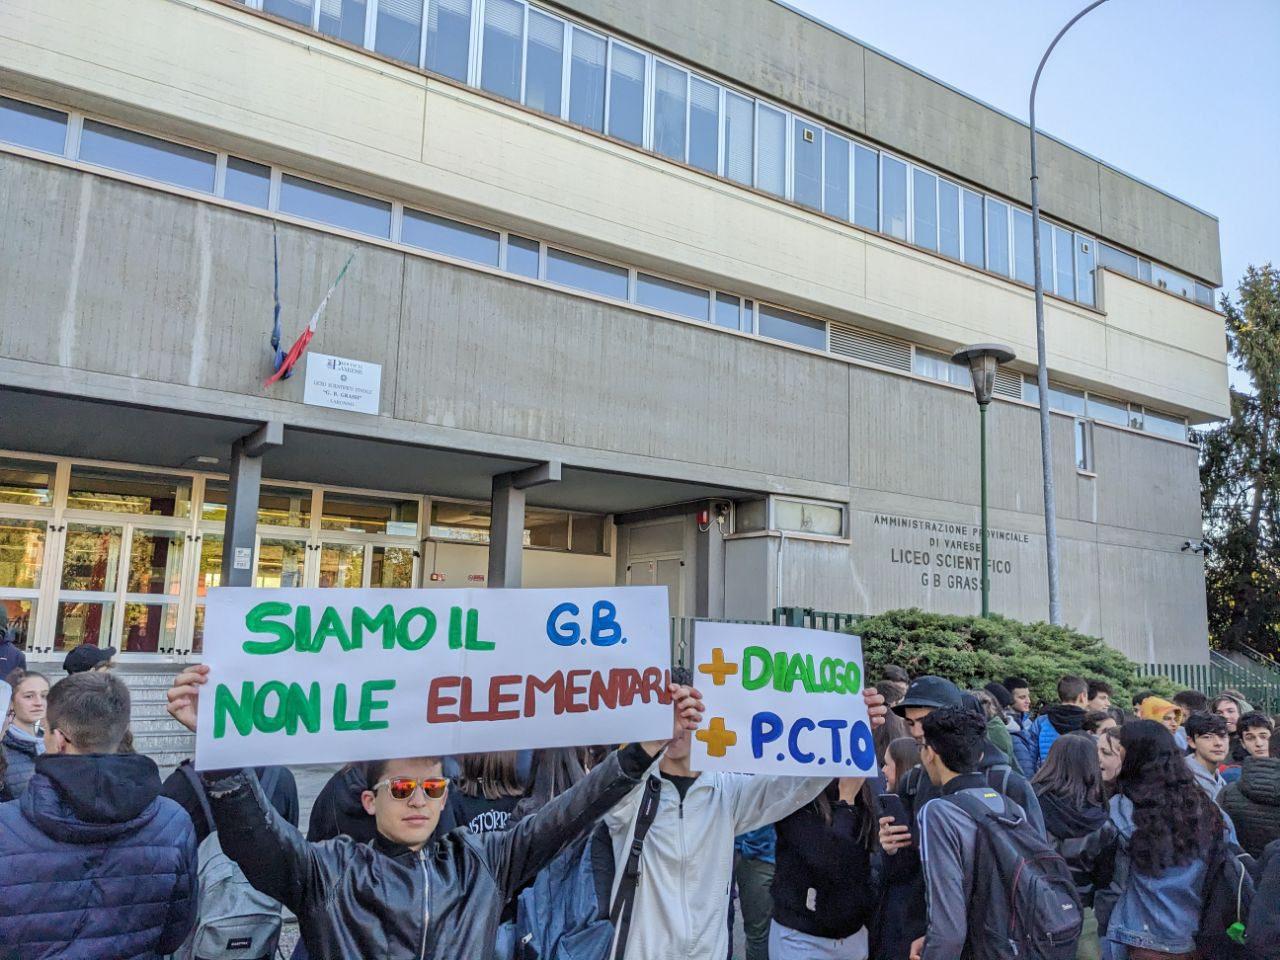 Ieri a Saronno: ricercato trovato… al supermercato. Protesta studenti liceo. Ospedale, arrivano gli aumenti. Ladri al cimitero